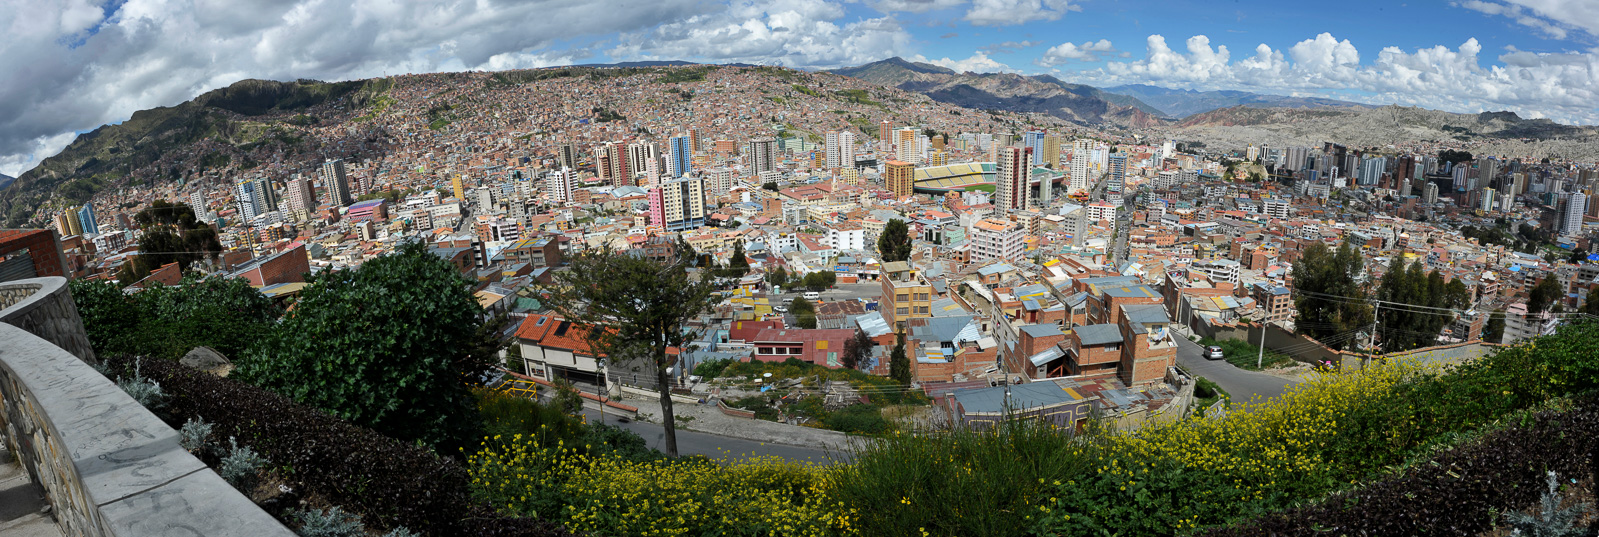 La Paz [28 mm, 1/160 Sek. bei f / 16, ISO 200]